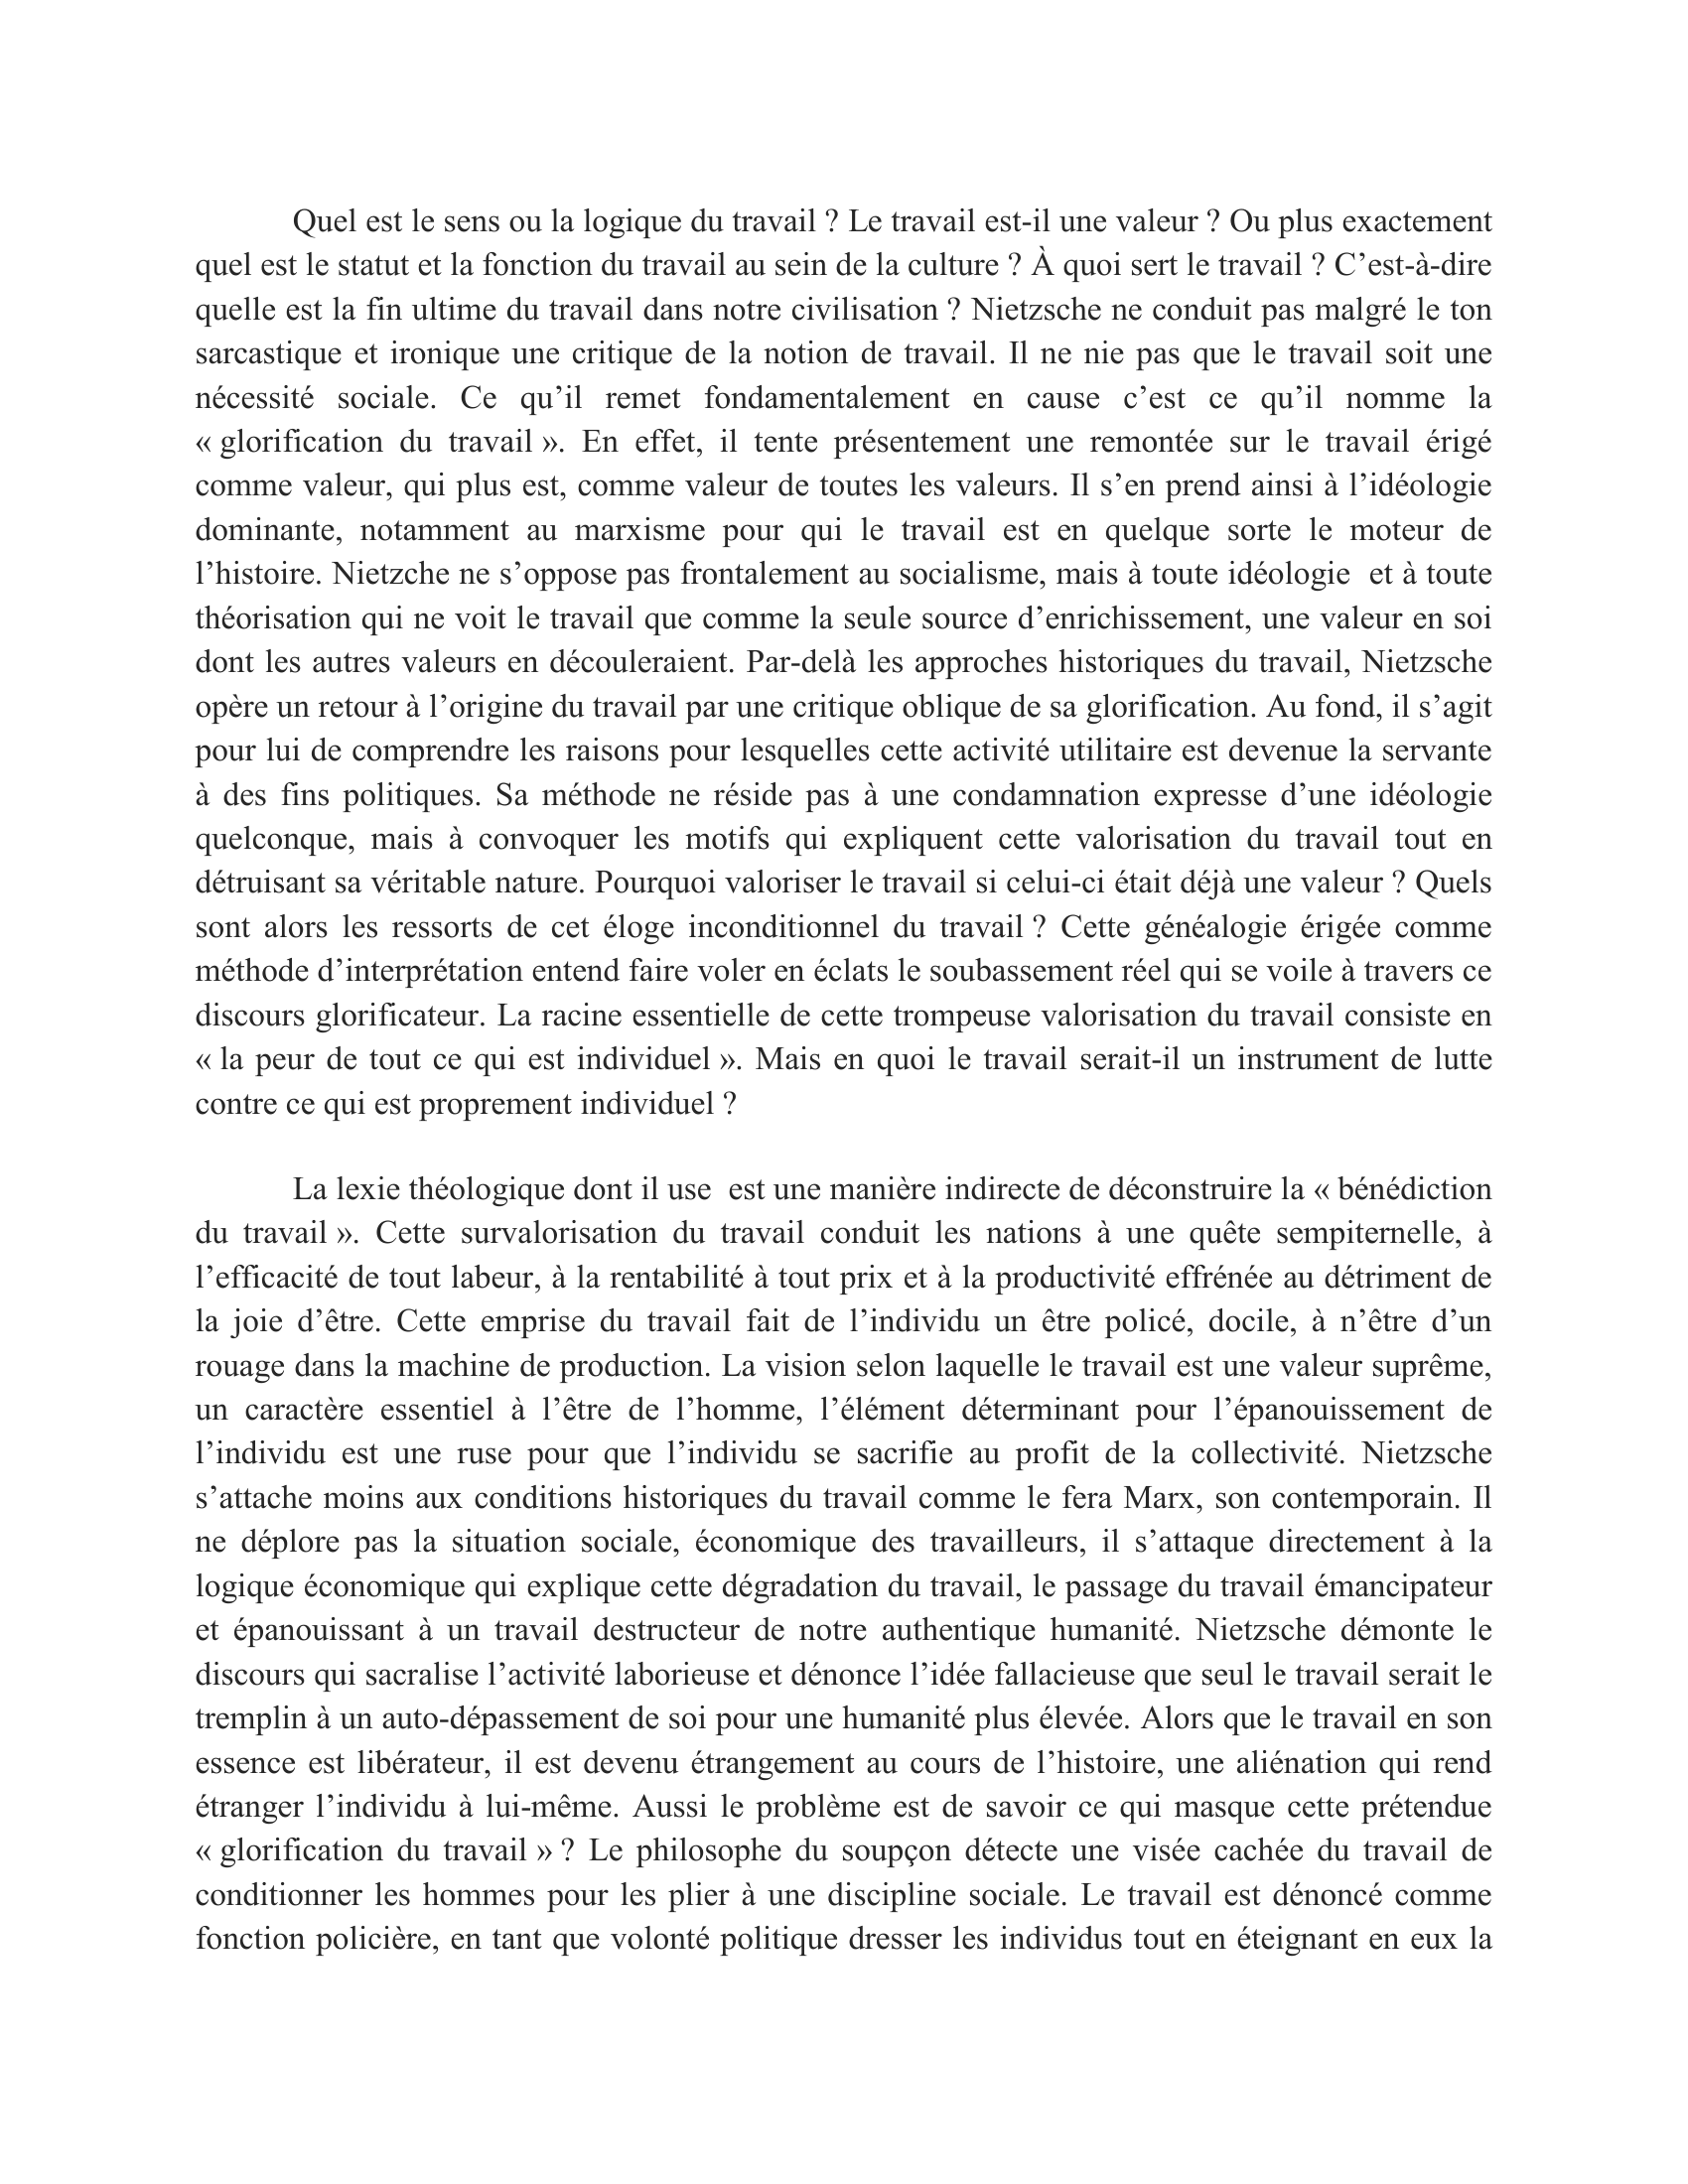 Prévisualisation du document Nietzsche, Aurore (1881), Livre III, § 173 et § 206,  trad. J. Hervier, Gallimard